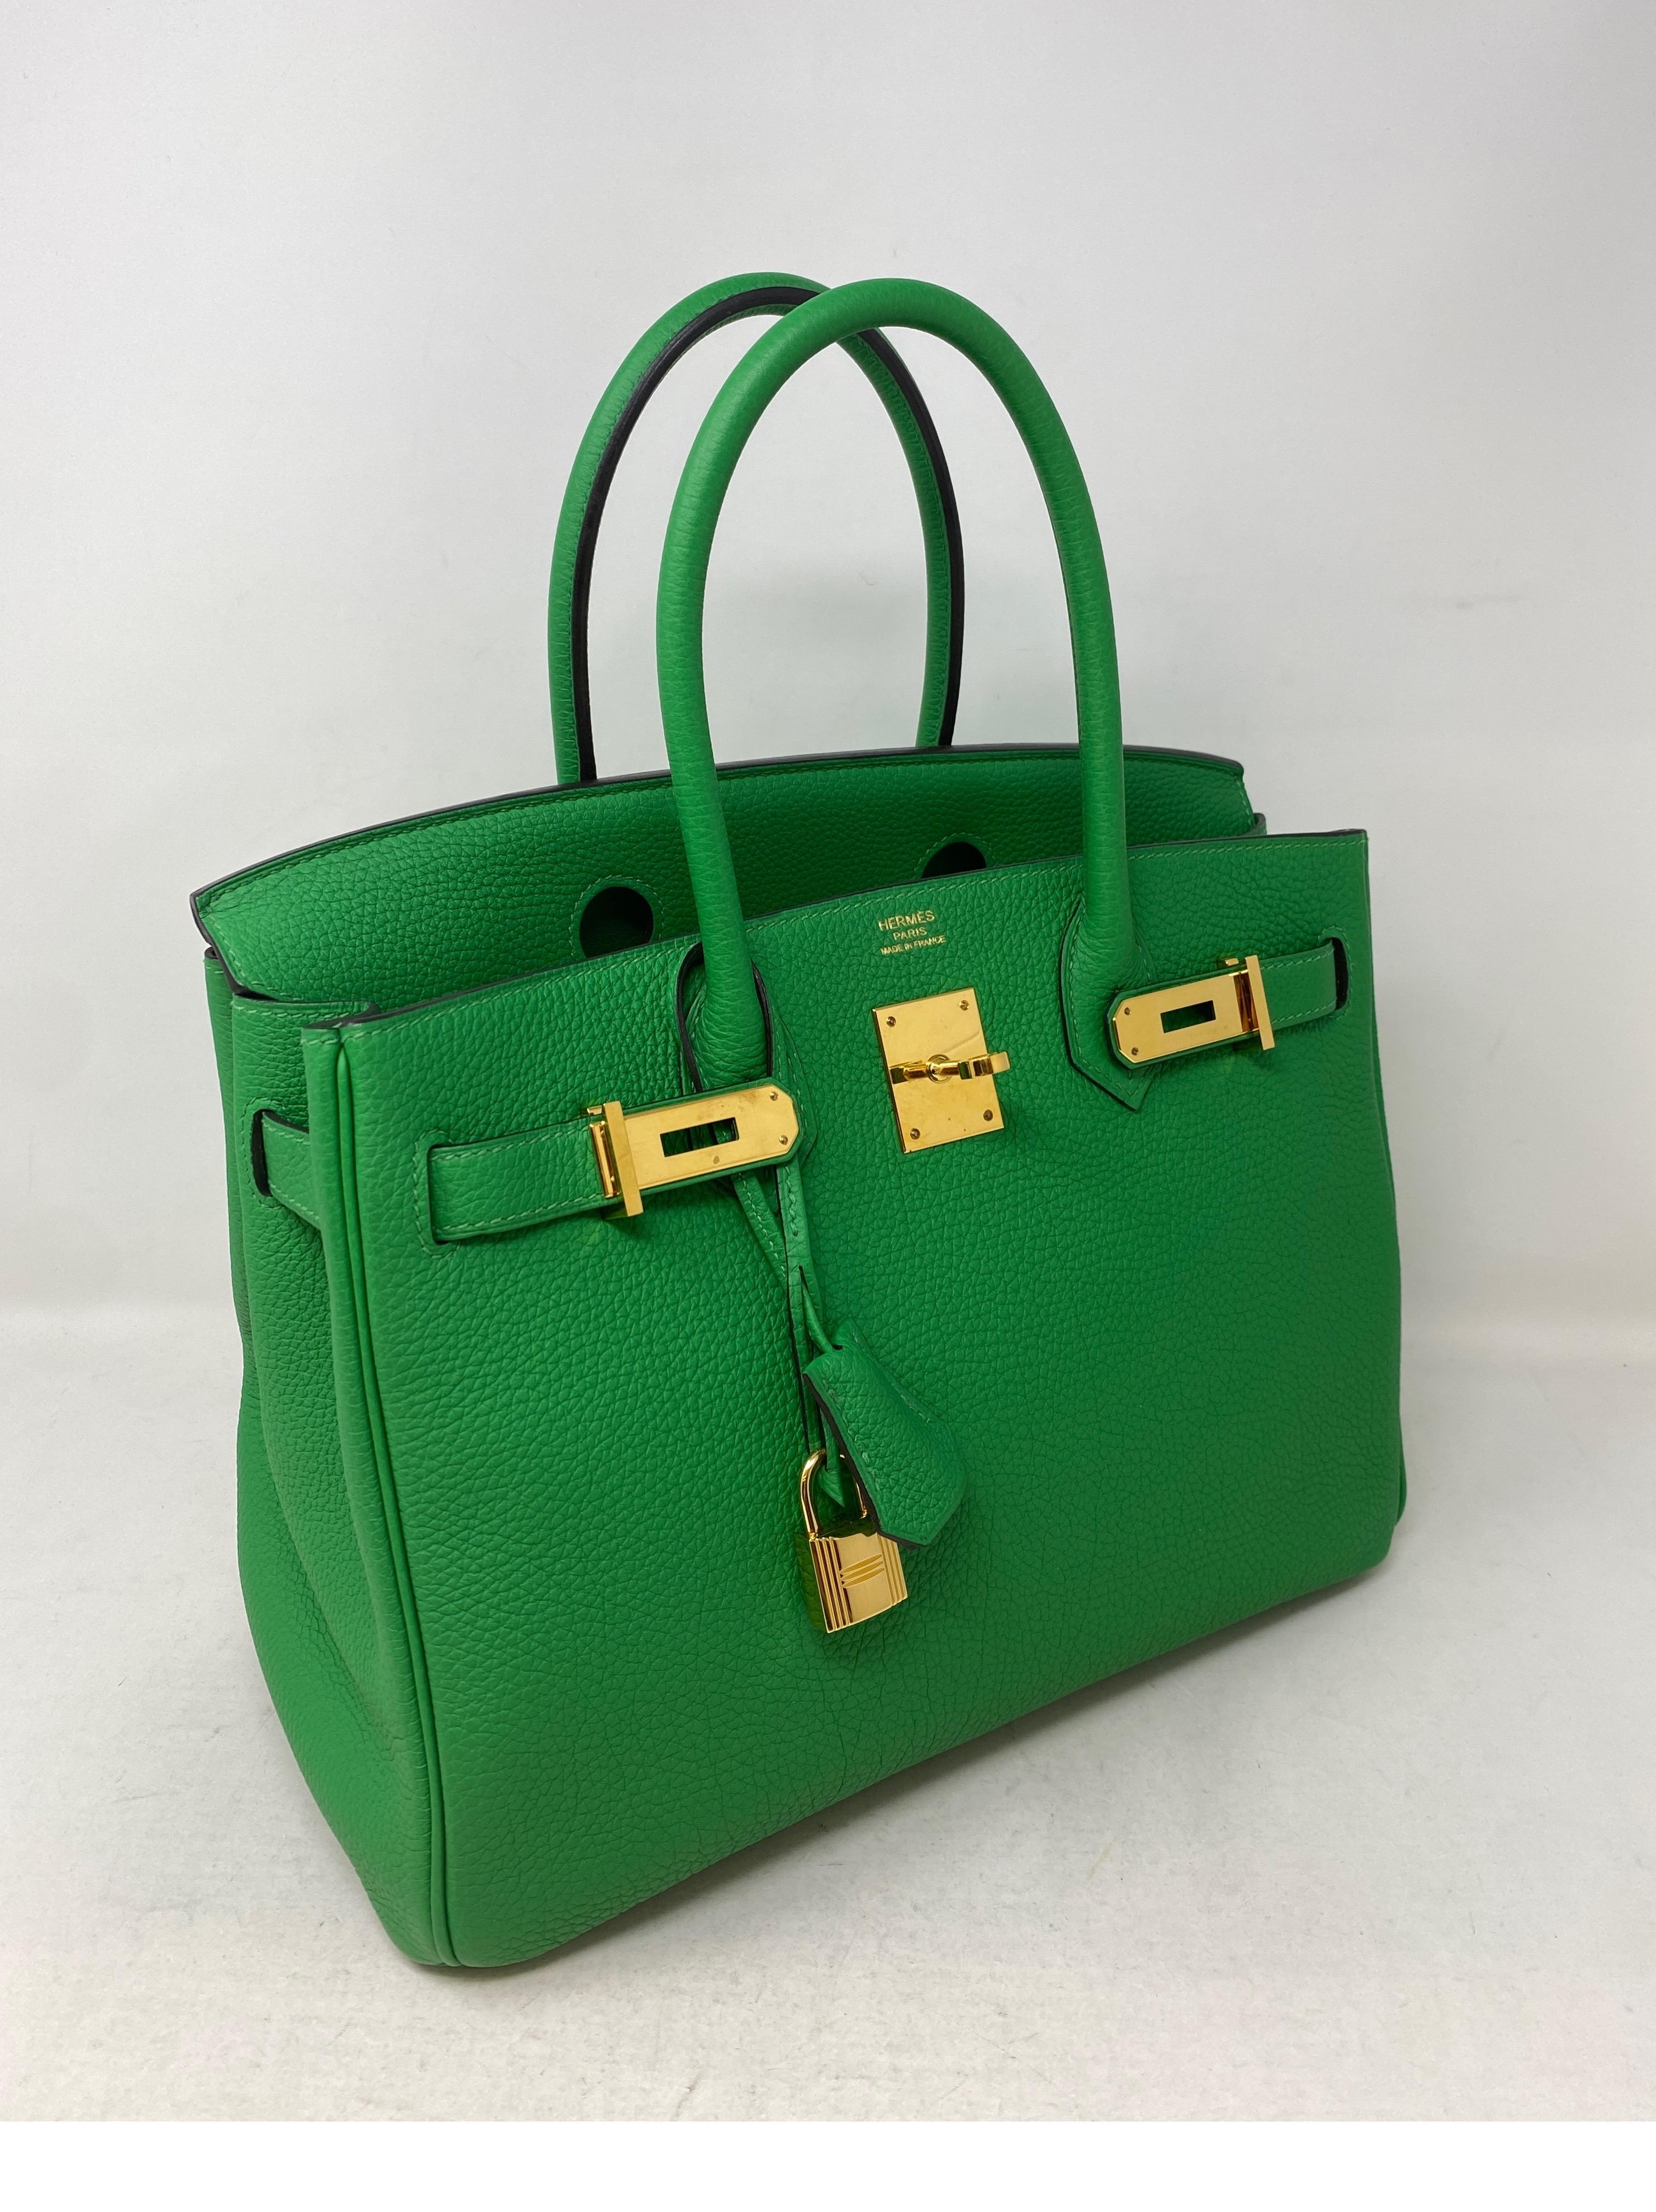 green birkin bag